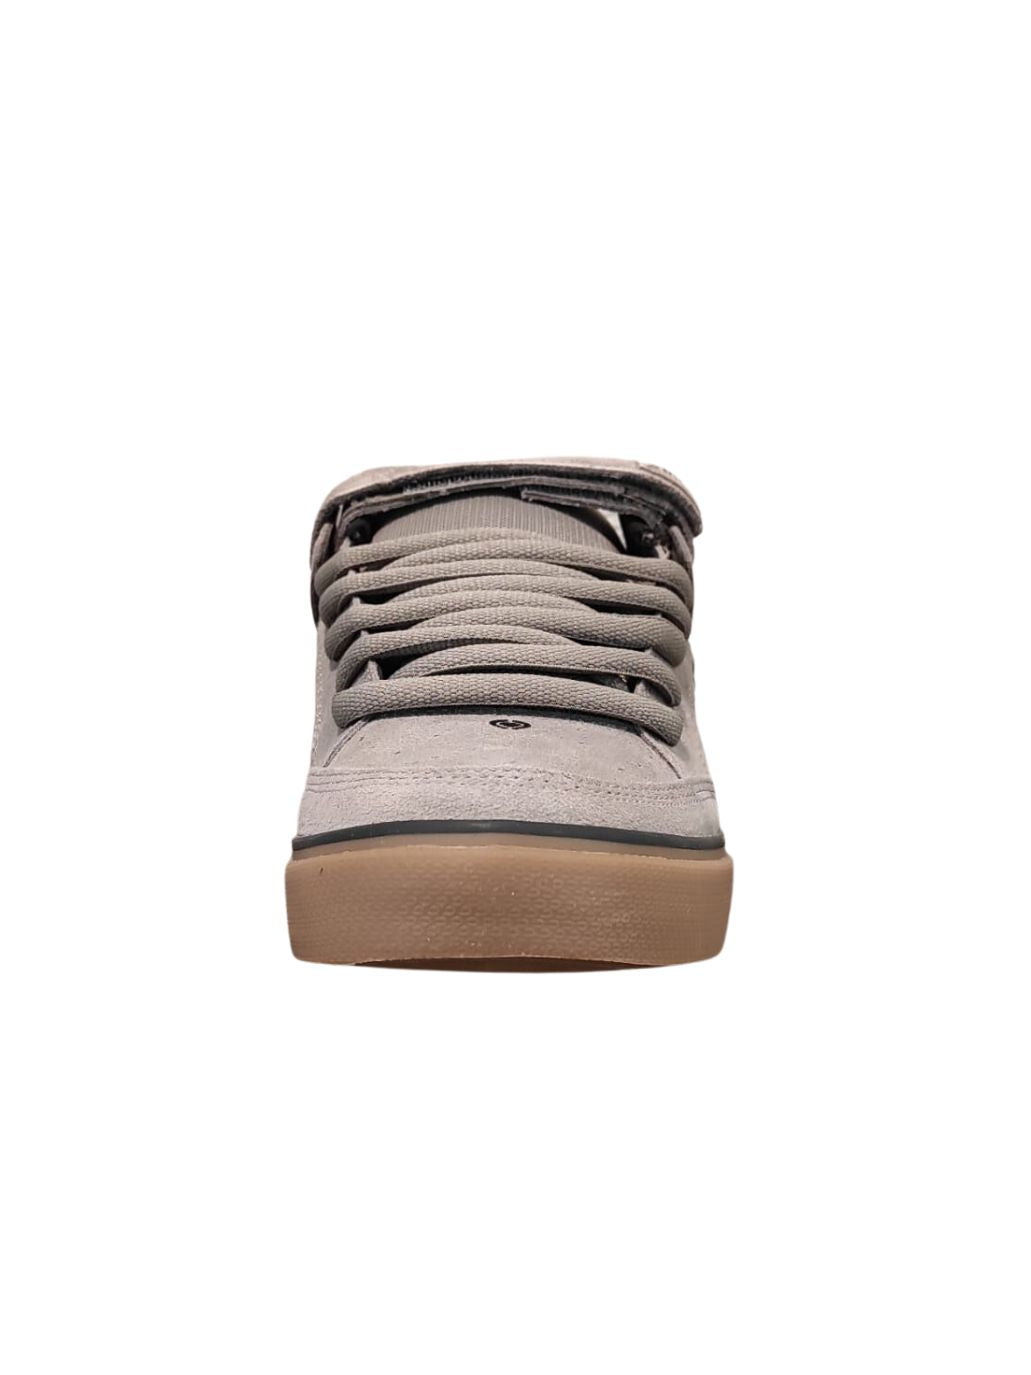 Zapatillas de skate Circa 205 Vulc Steeple Grey/Black/Gum/Suede | Calzado | Zapatillas | surfdevils.com